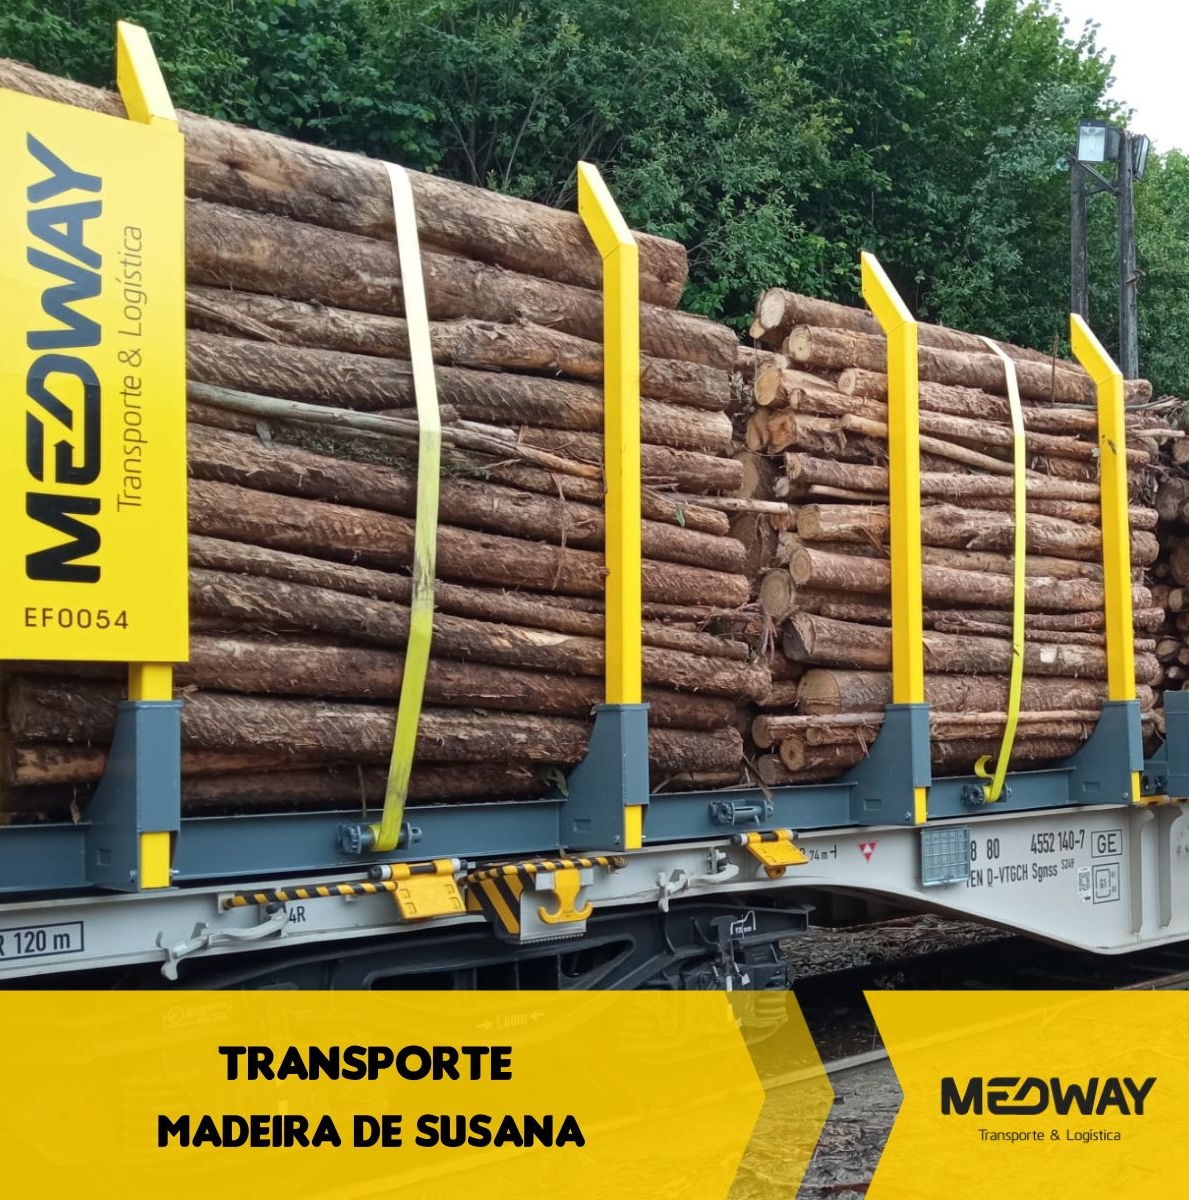 Transporte madeira